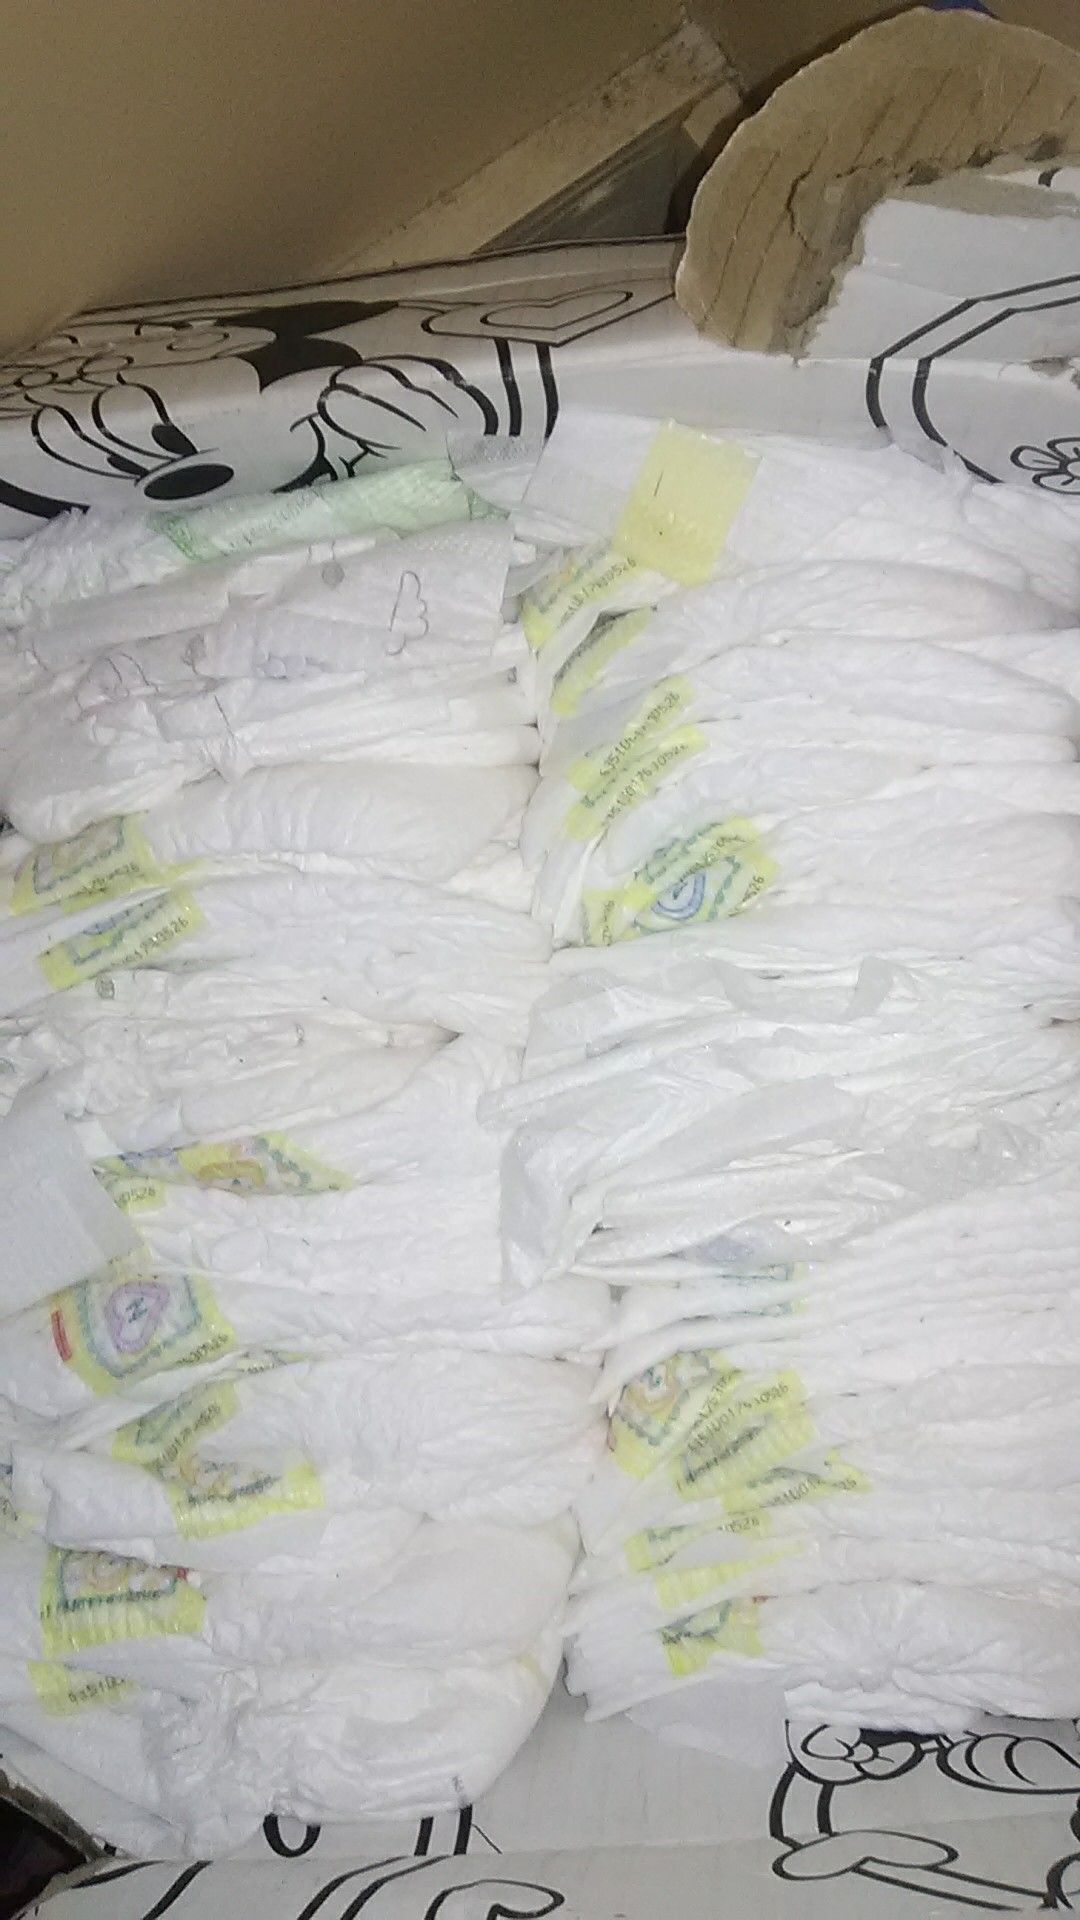 135 Huggies newborn diapers for $45